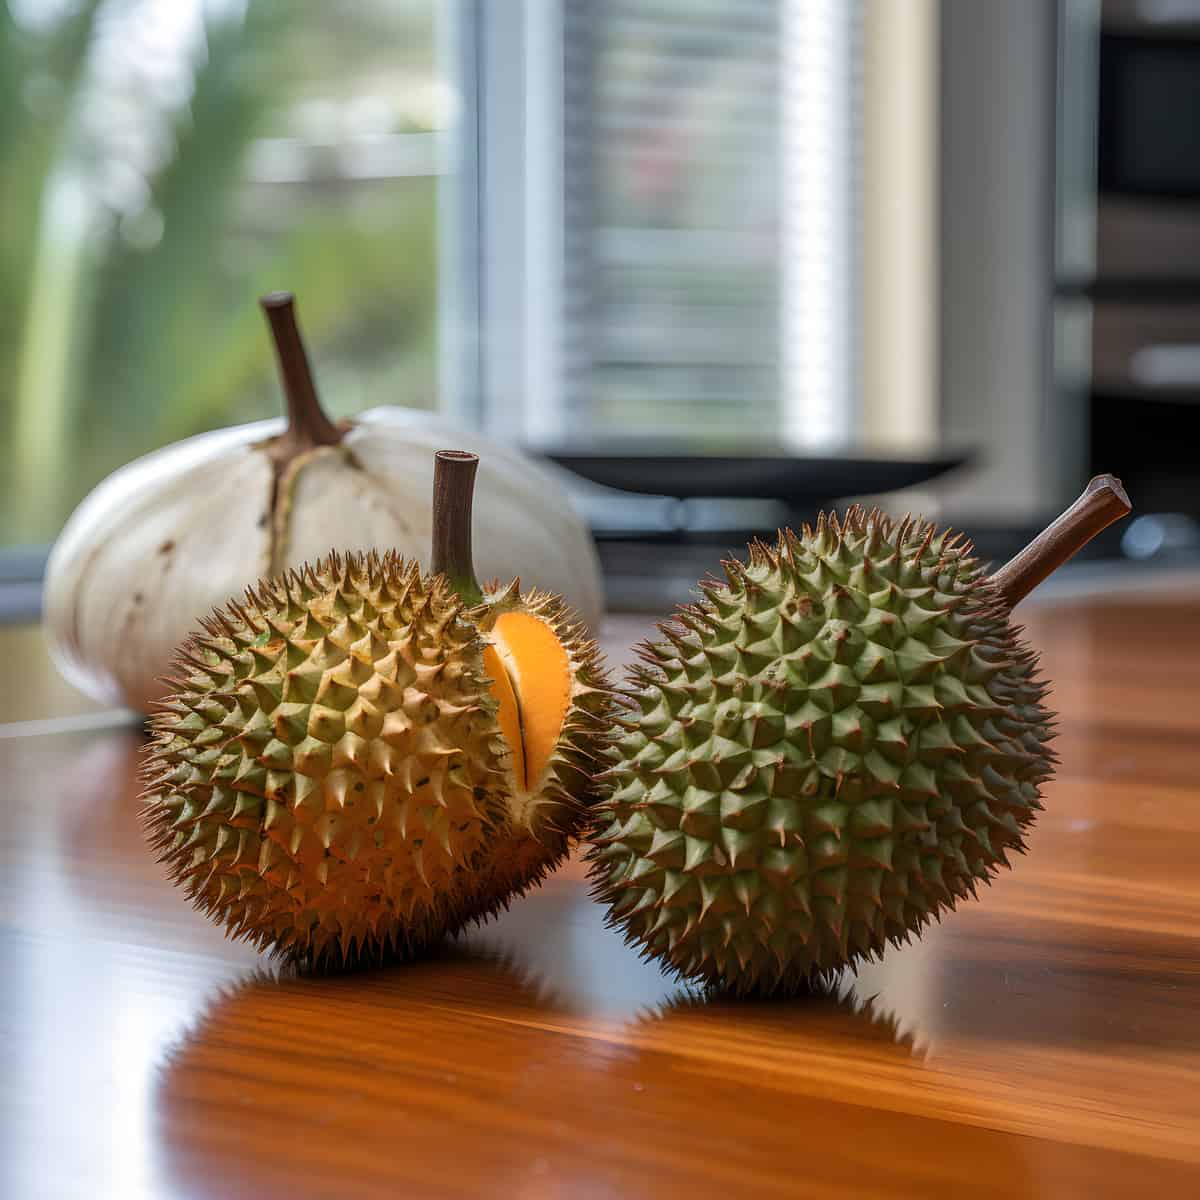 Durio Oxleyanus Fruit on a kitchen counter